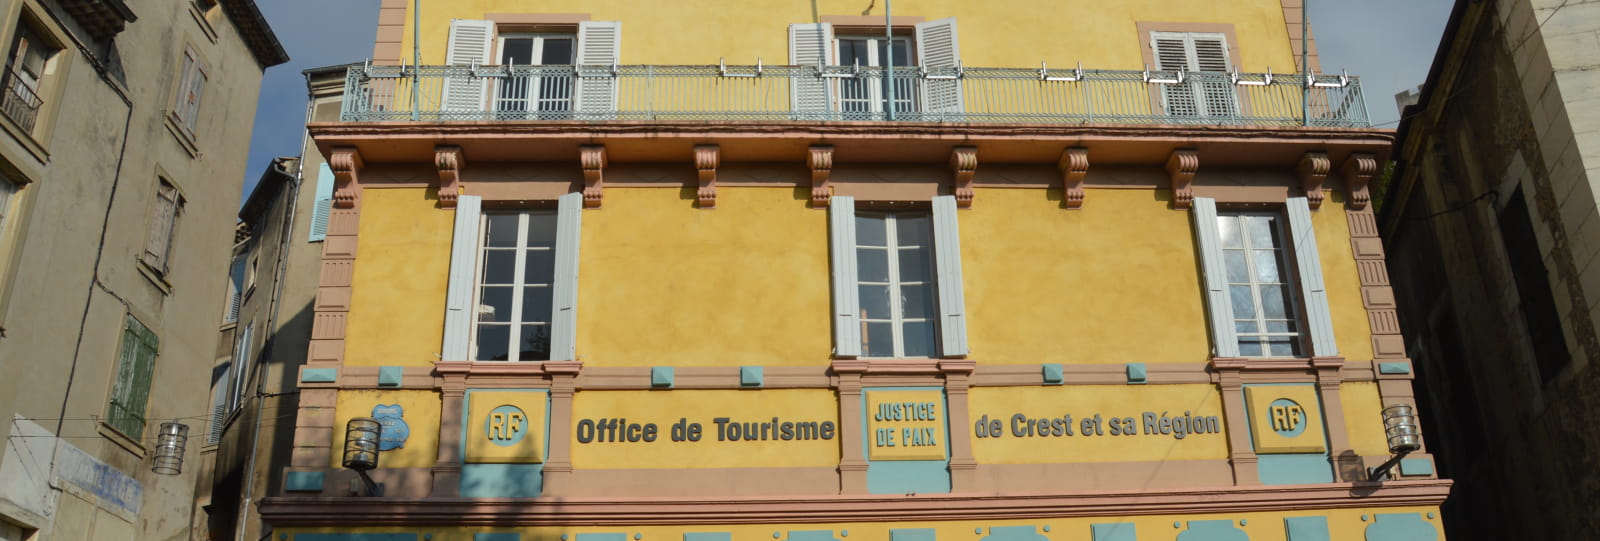 Office de tourisme Cœur de Drôme - Bureau de Crest